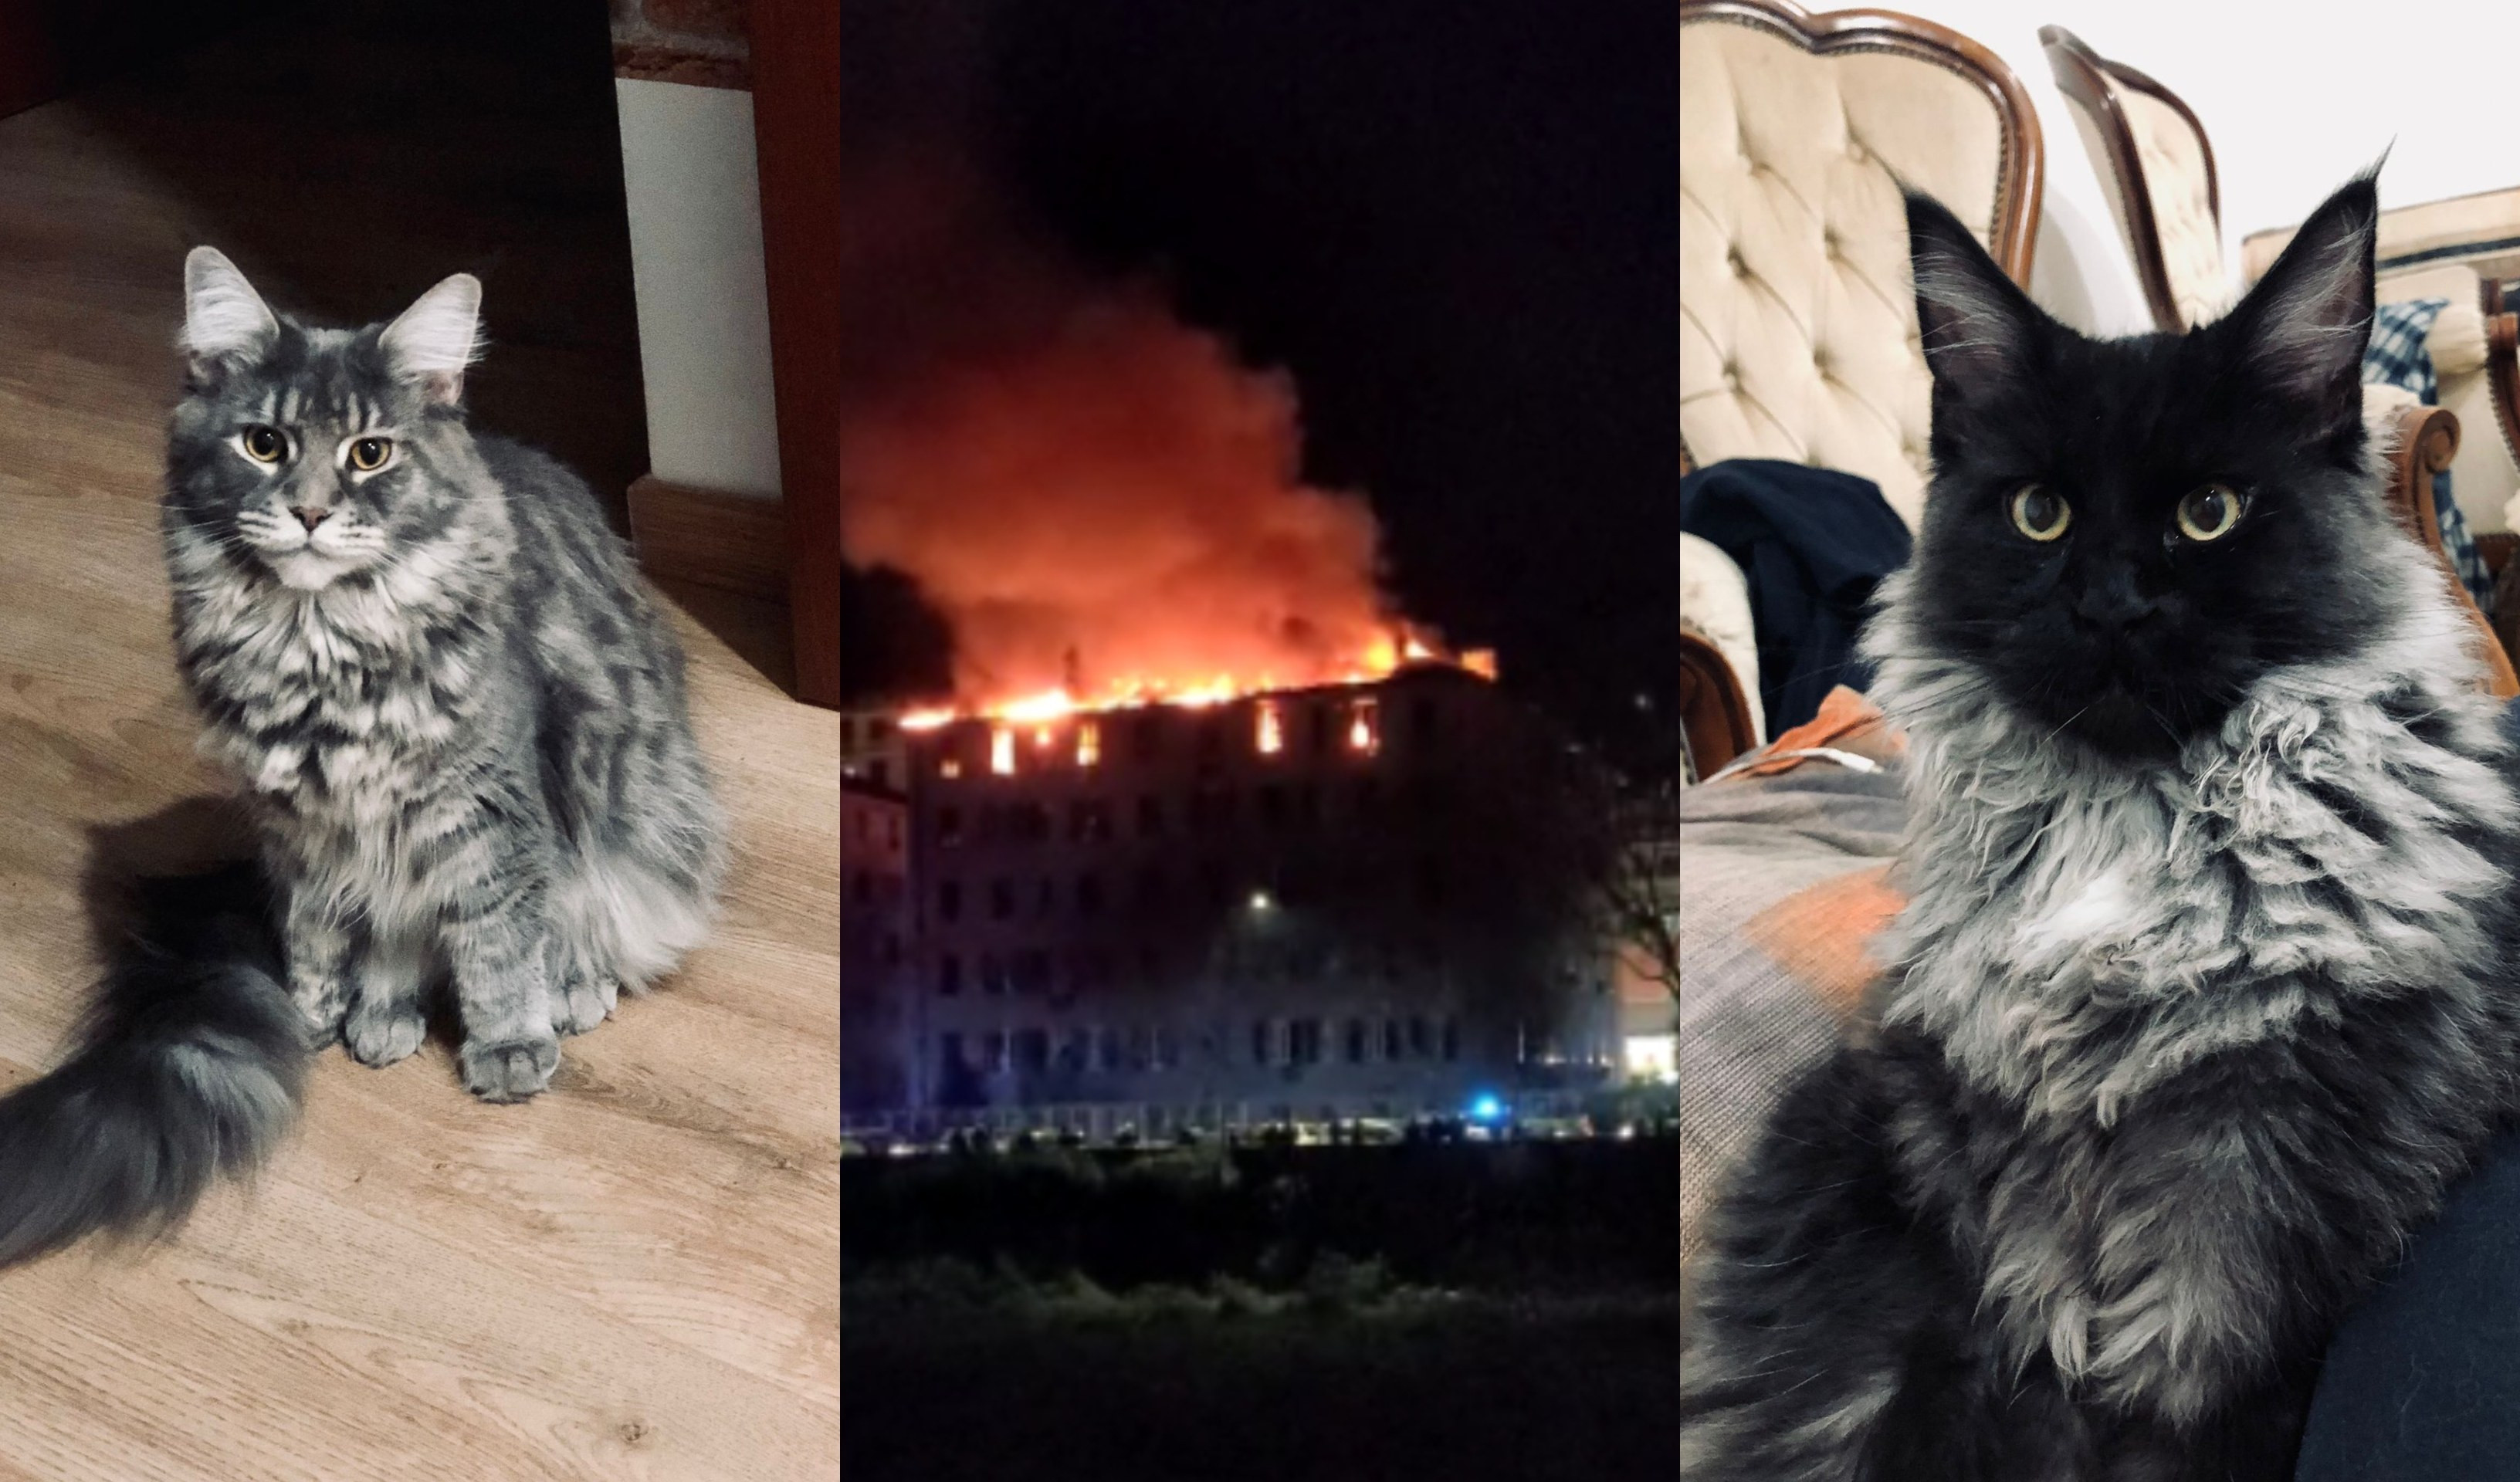 Incendio via Piacenza, dispersi due gatti: l'appello del proprietario per ritrovarli